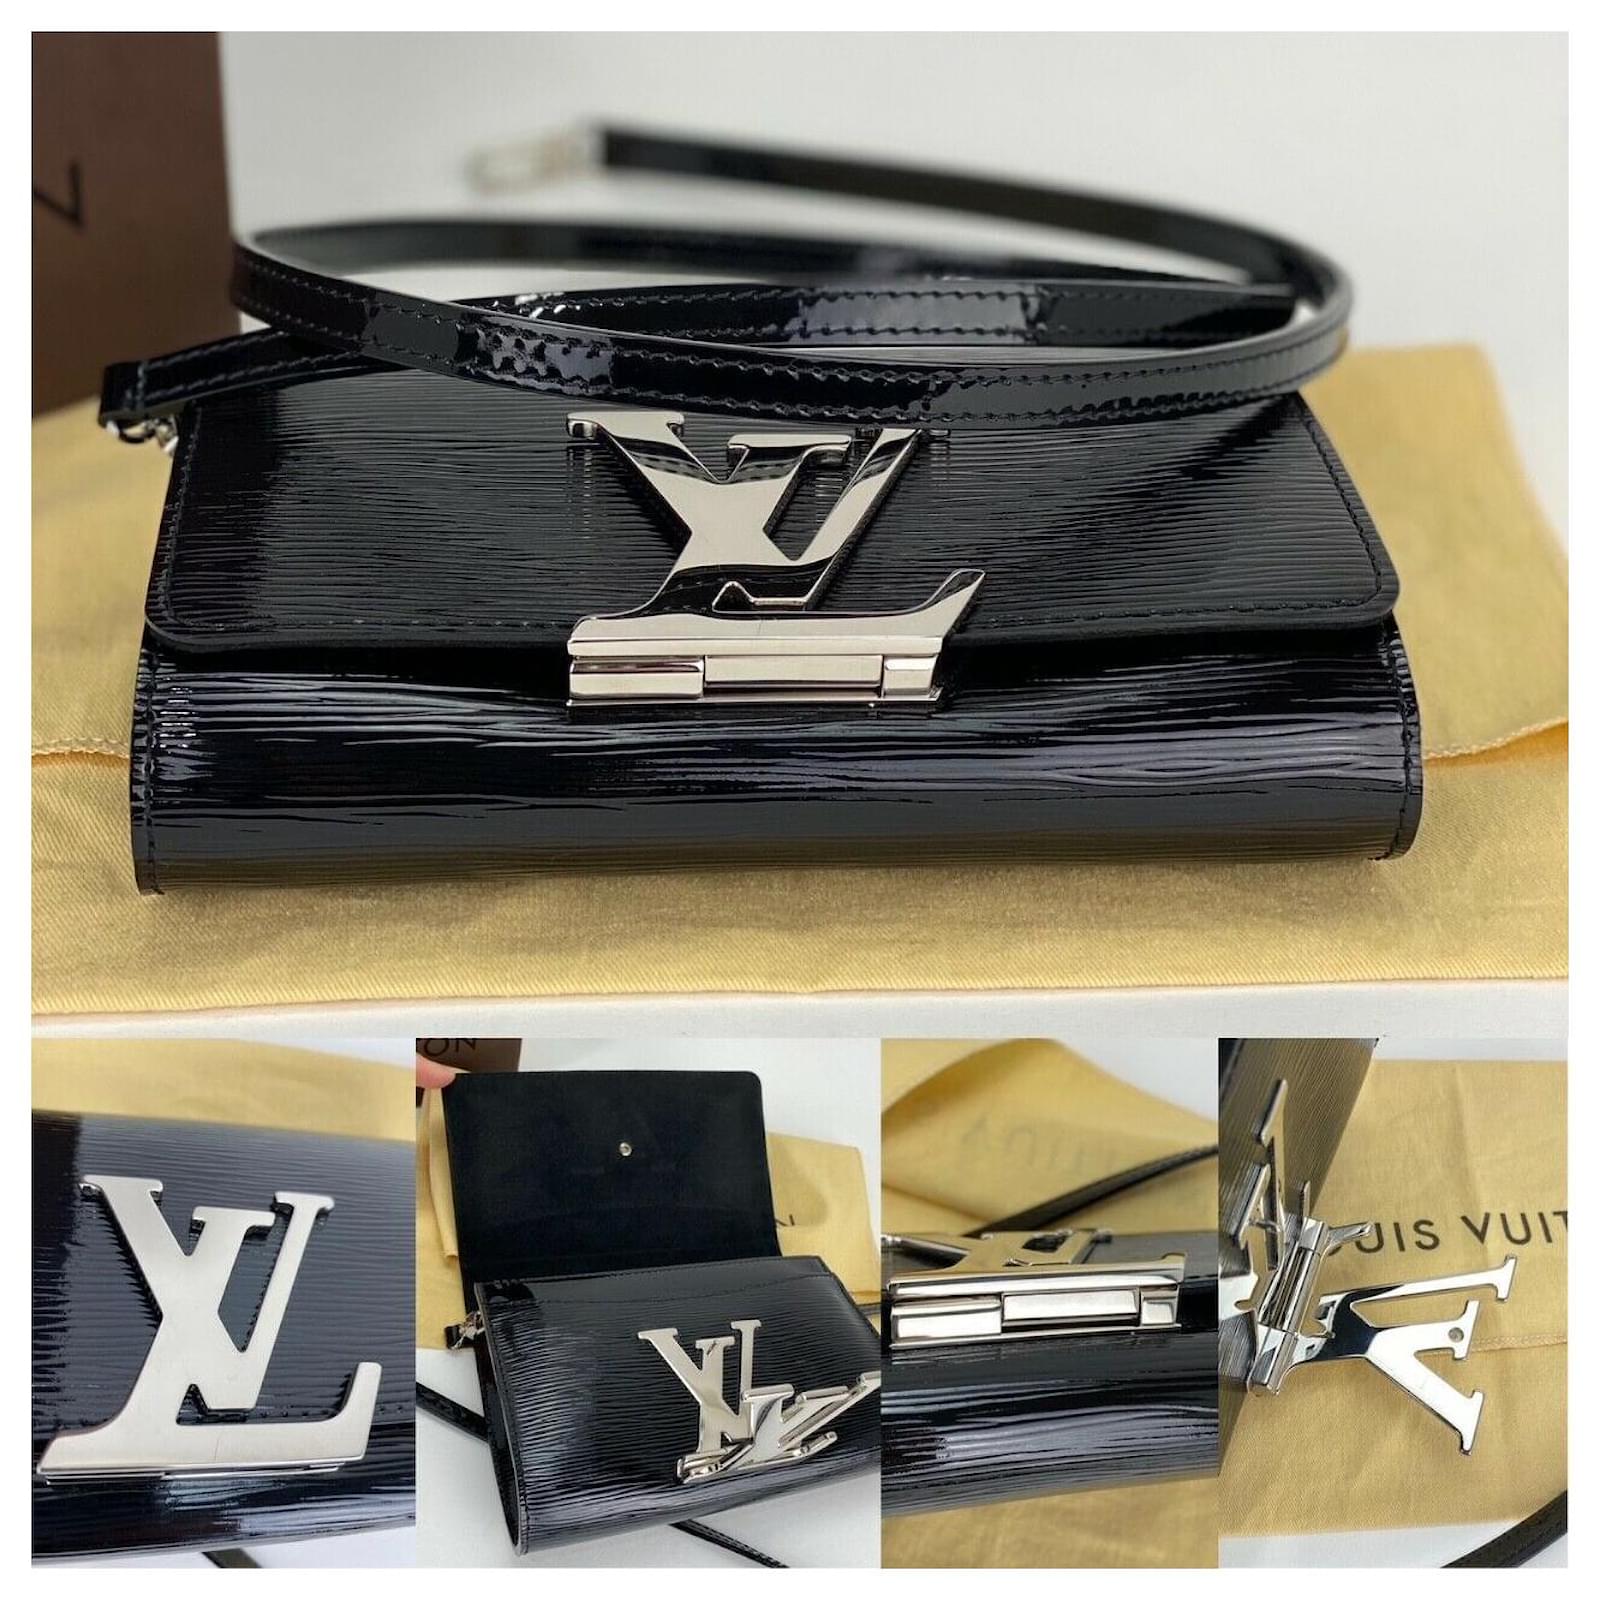 Louis Vuitton Bag Louise Pm Epi Electric Black Leather Shoulder